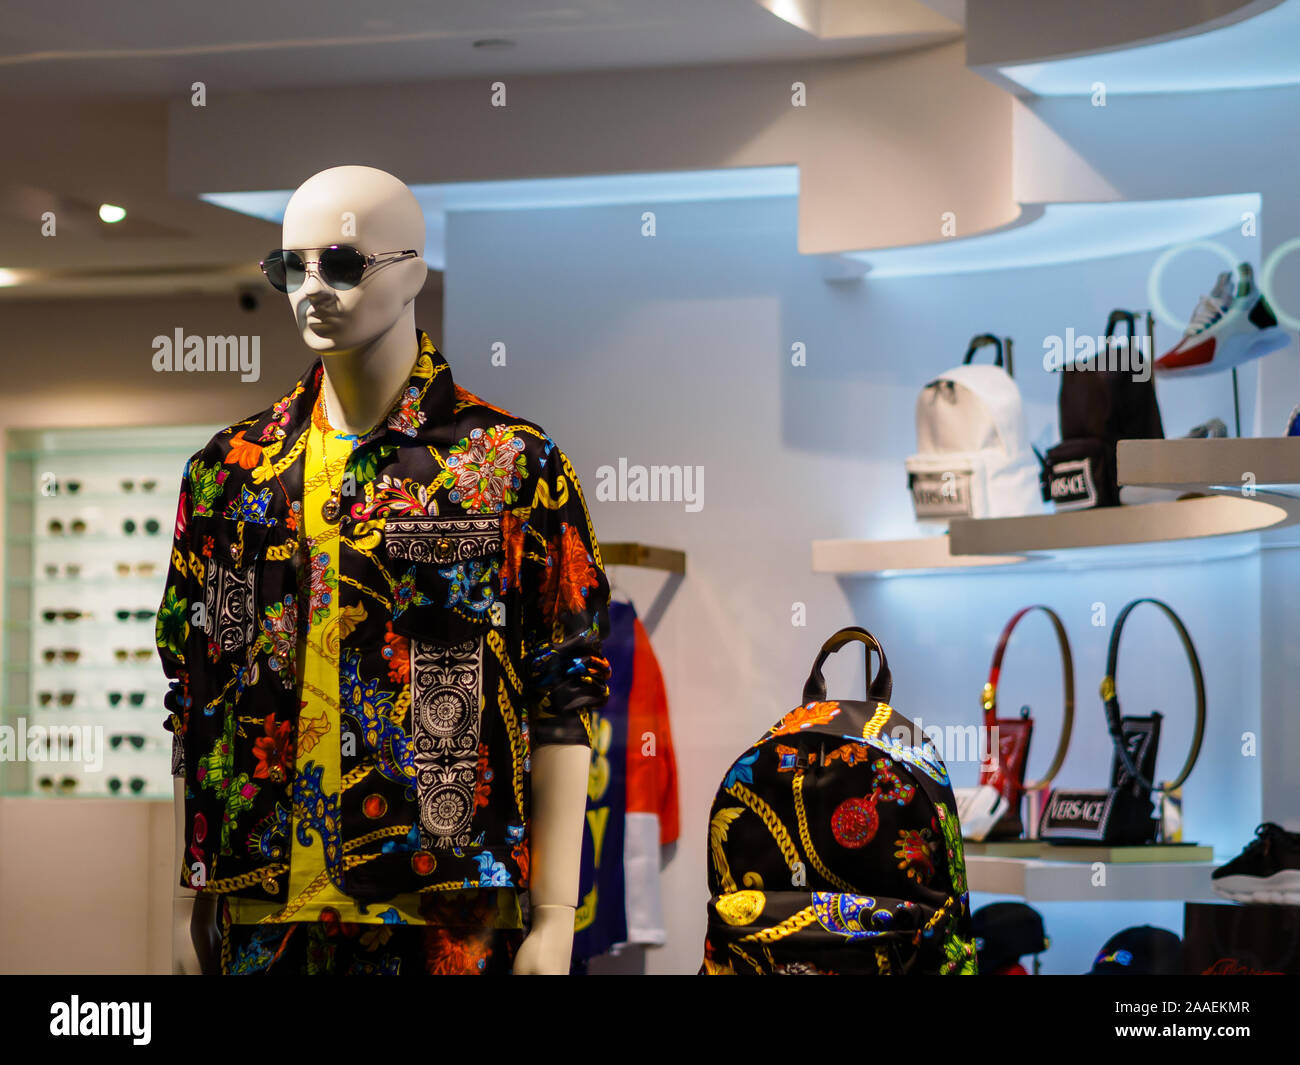 Singapour - 25 MAR 2019 - L'affichage de marchandises d'une boutique de mode de luxe italien Versace à Paragon Mall, Singapour Banque D'Images